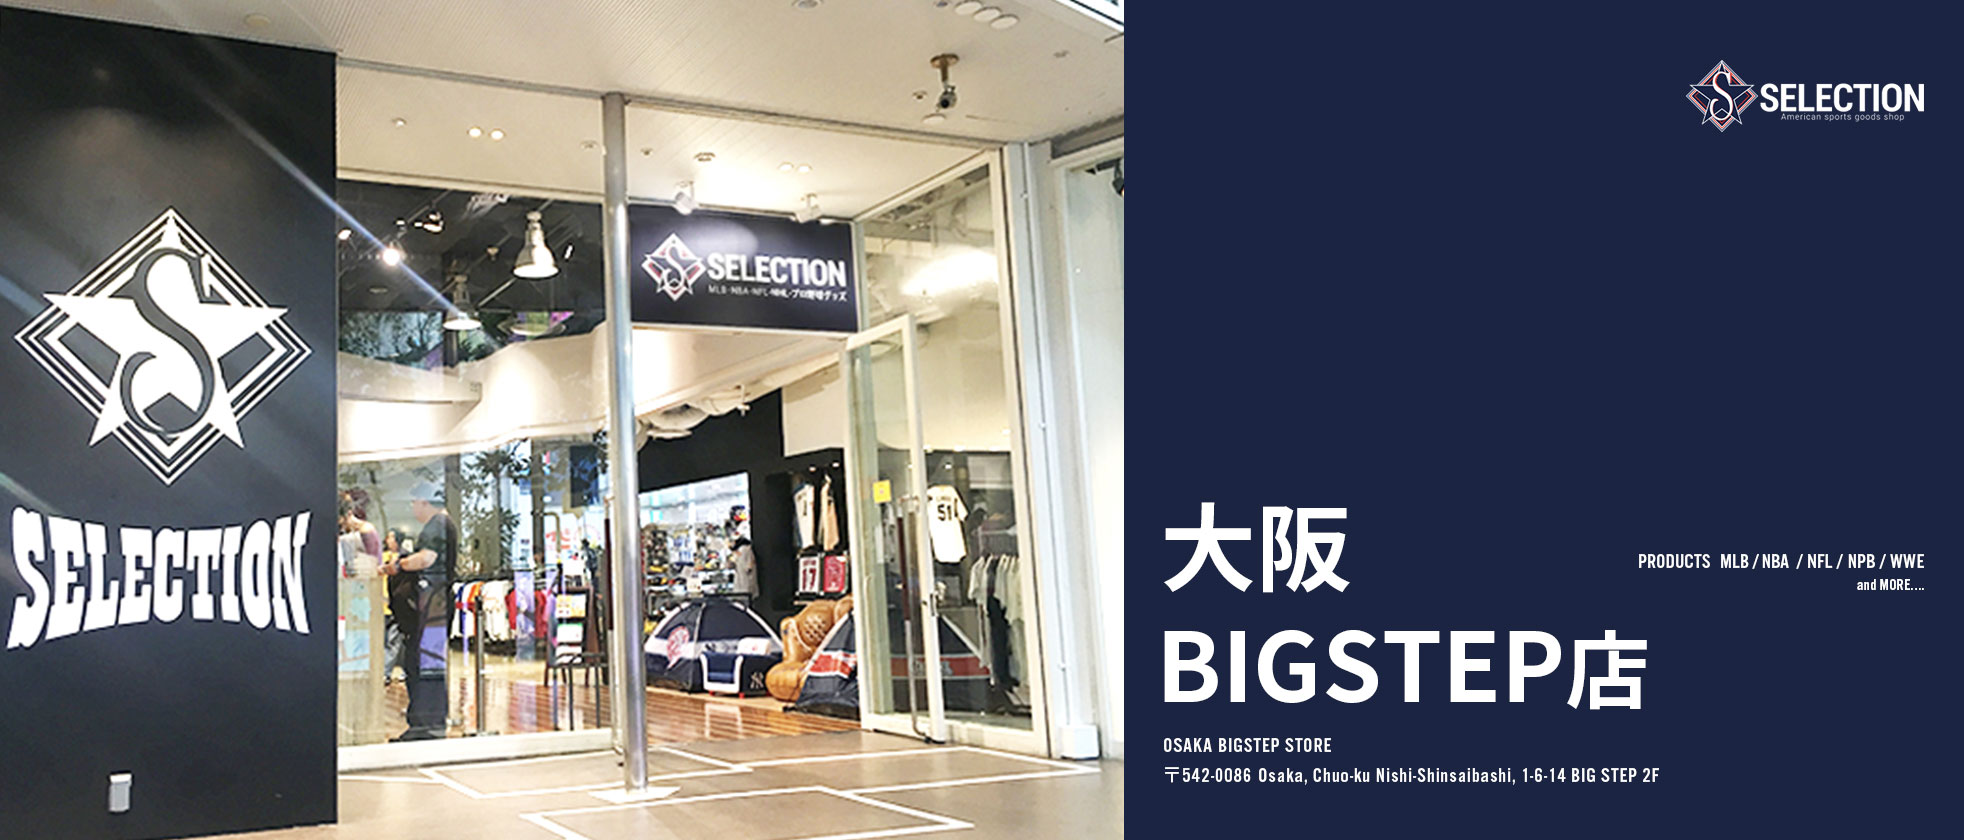 セレクション 大阪 BIGSTEP店